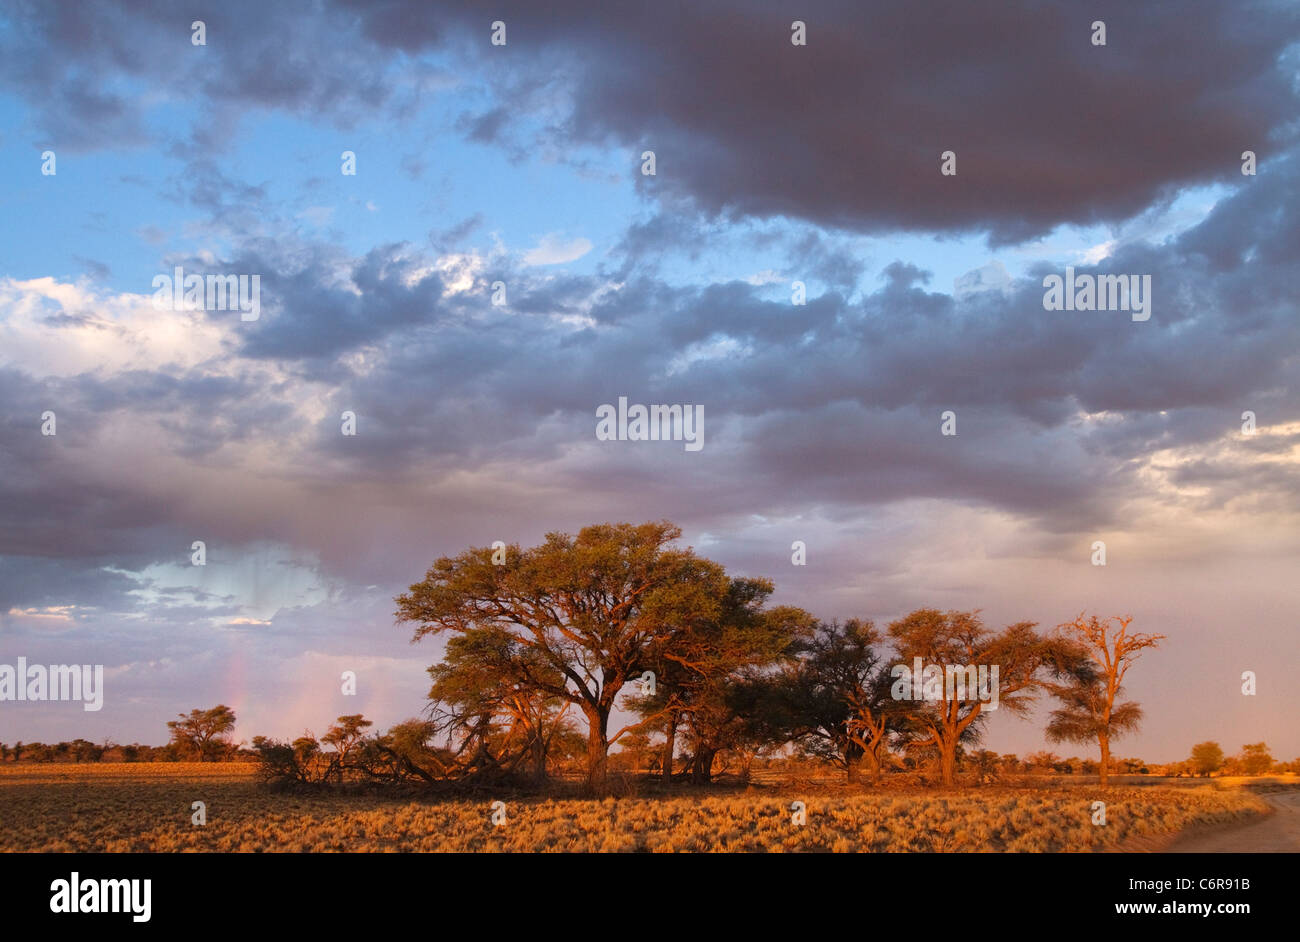 Eine Baumgruppe Camelthorn (Acacia Erioloba) in warmes Licht vor einem wolkigen Himmel gesehen Stockfoto